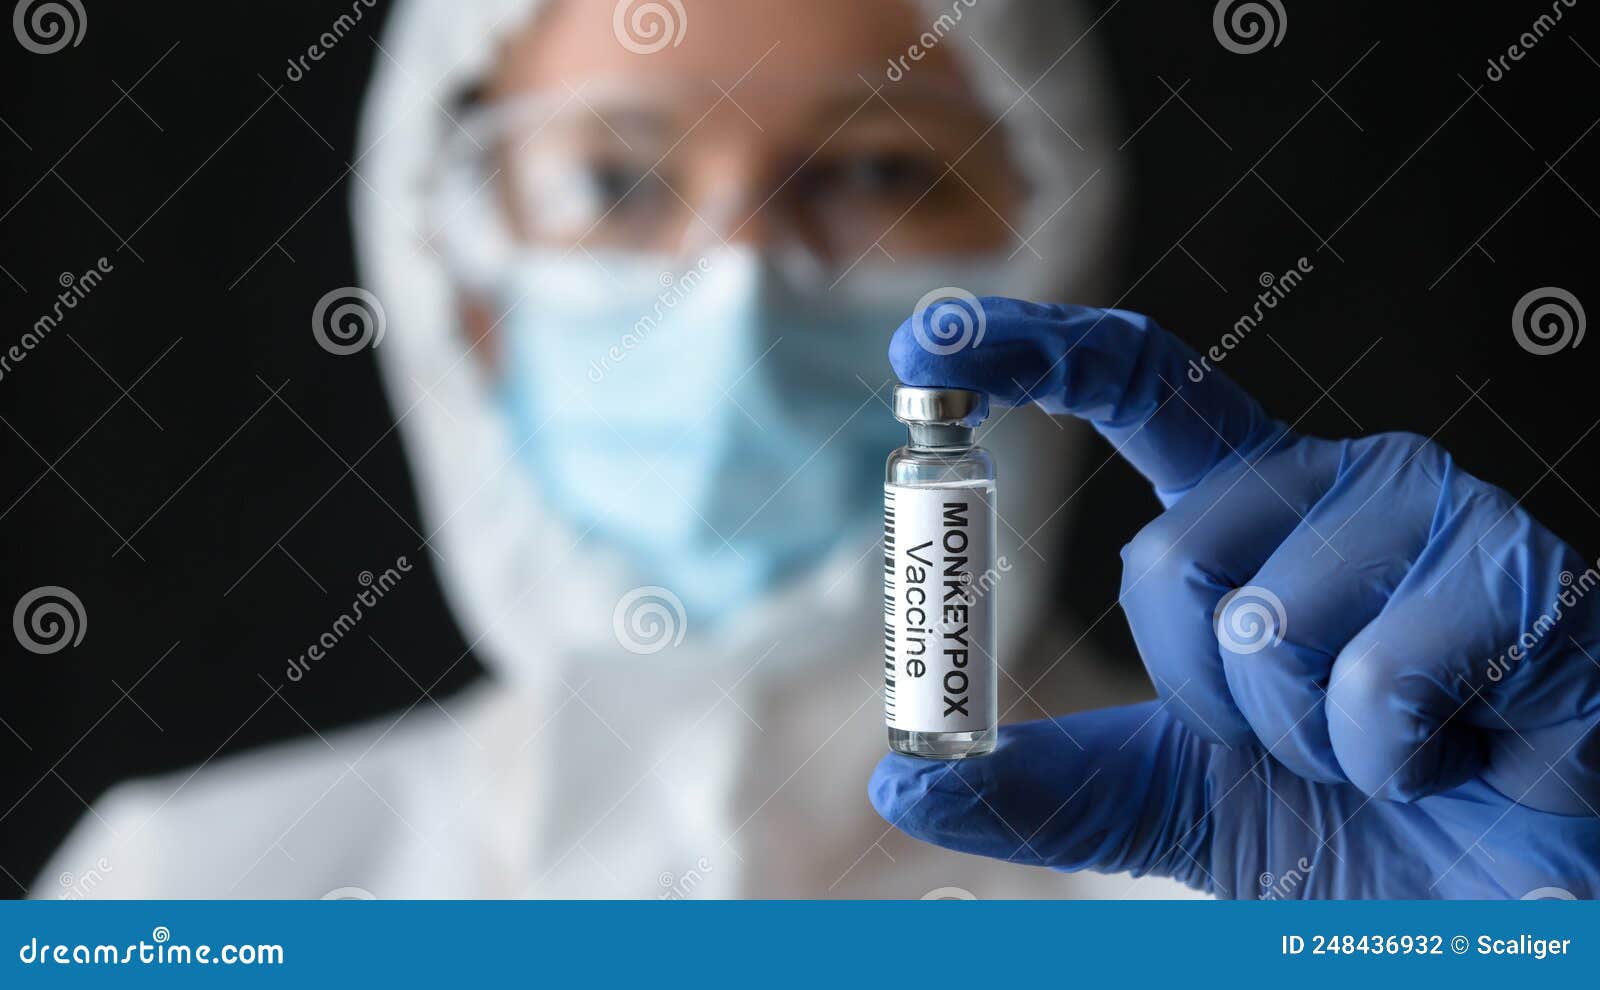 monkeypox vaccine in doctors hand